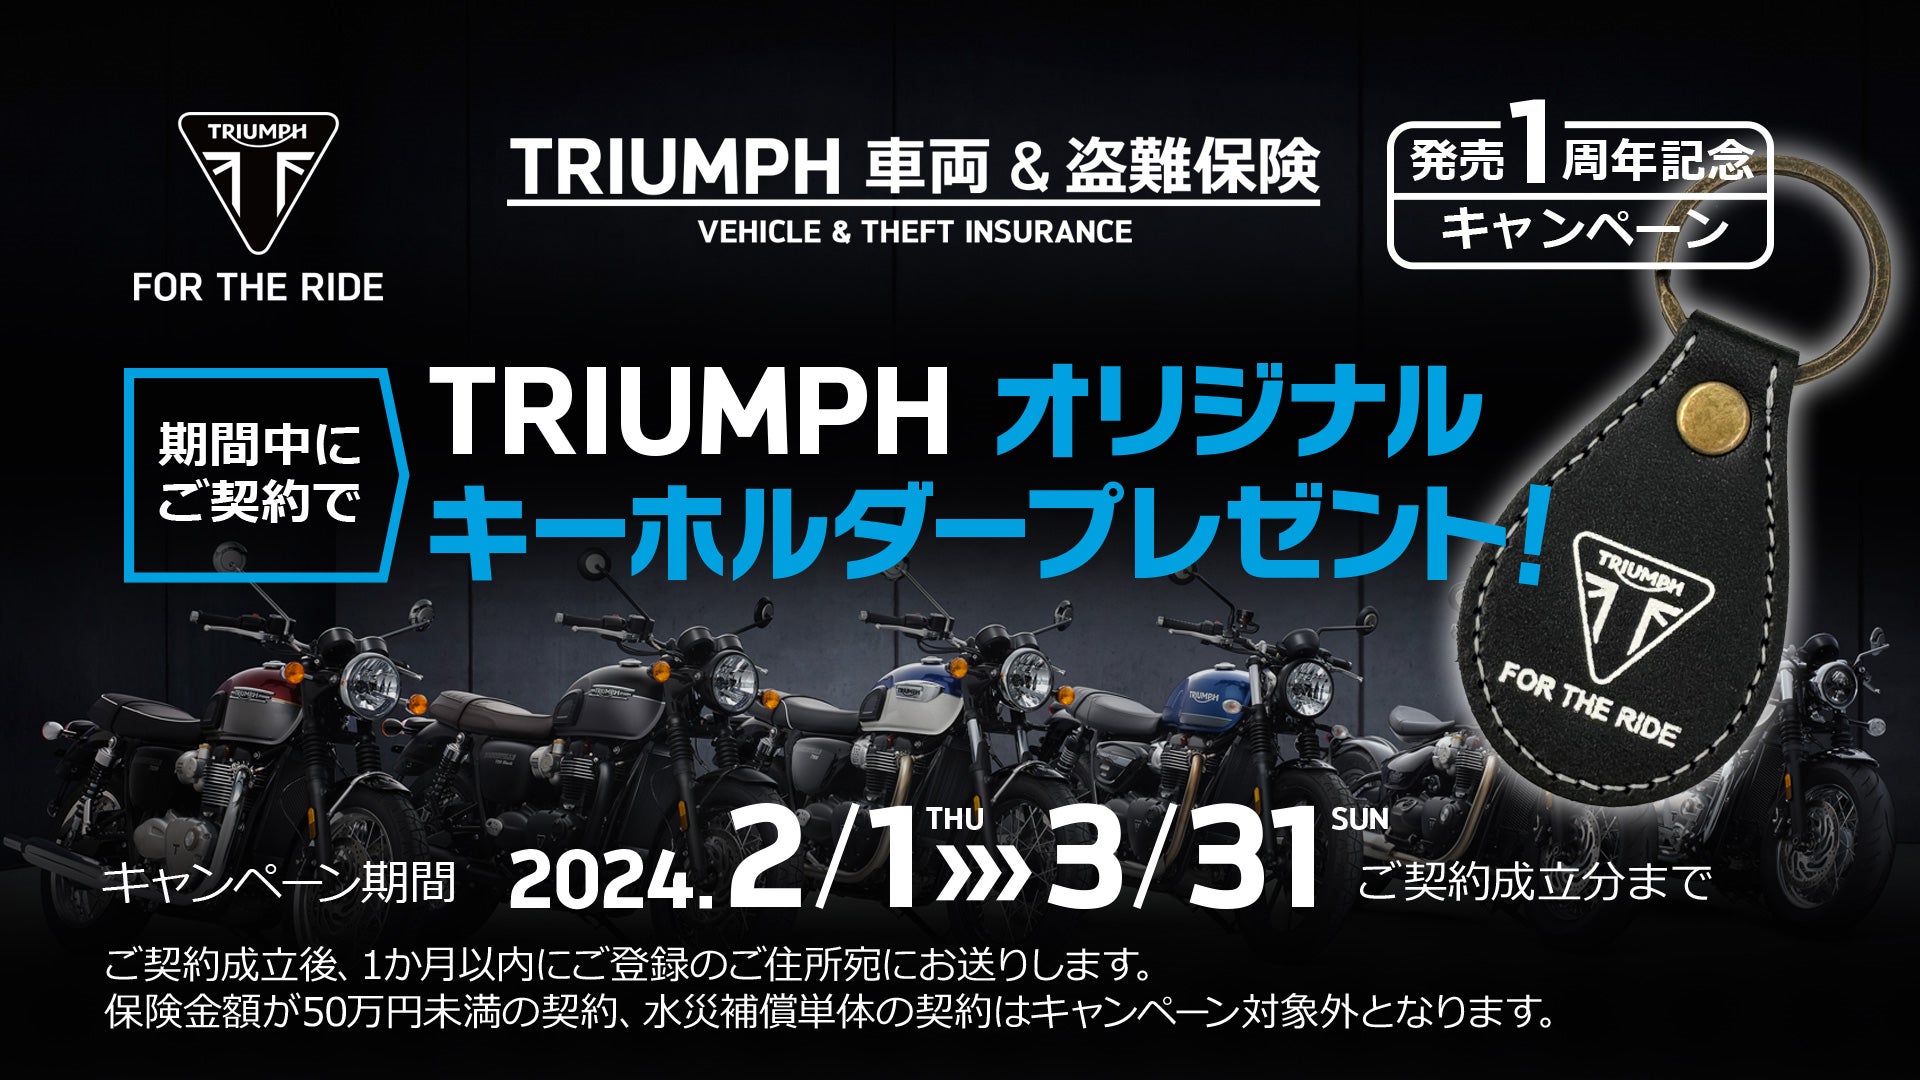 SBI日本少短、『TRIUMPH 車両＆盗難保険』販売開始1周年ノベルティプレゼントキャンペーンを実施